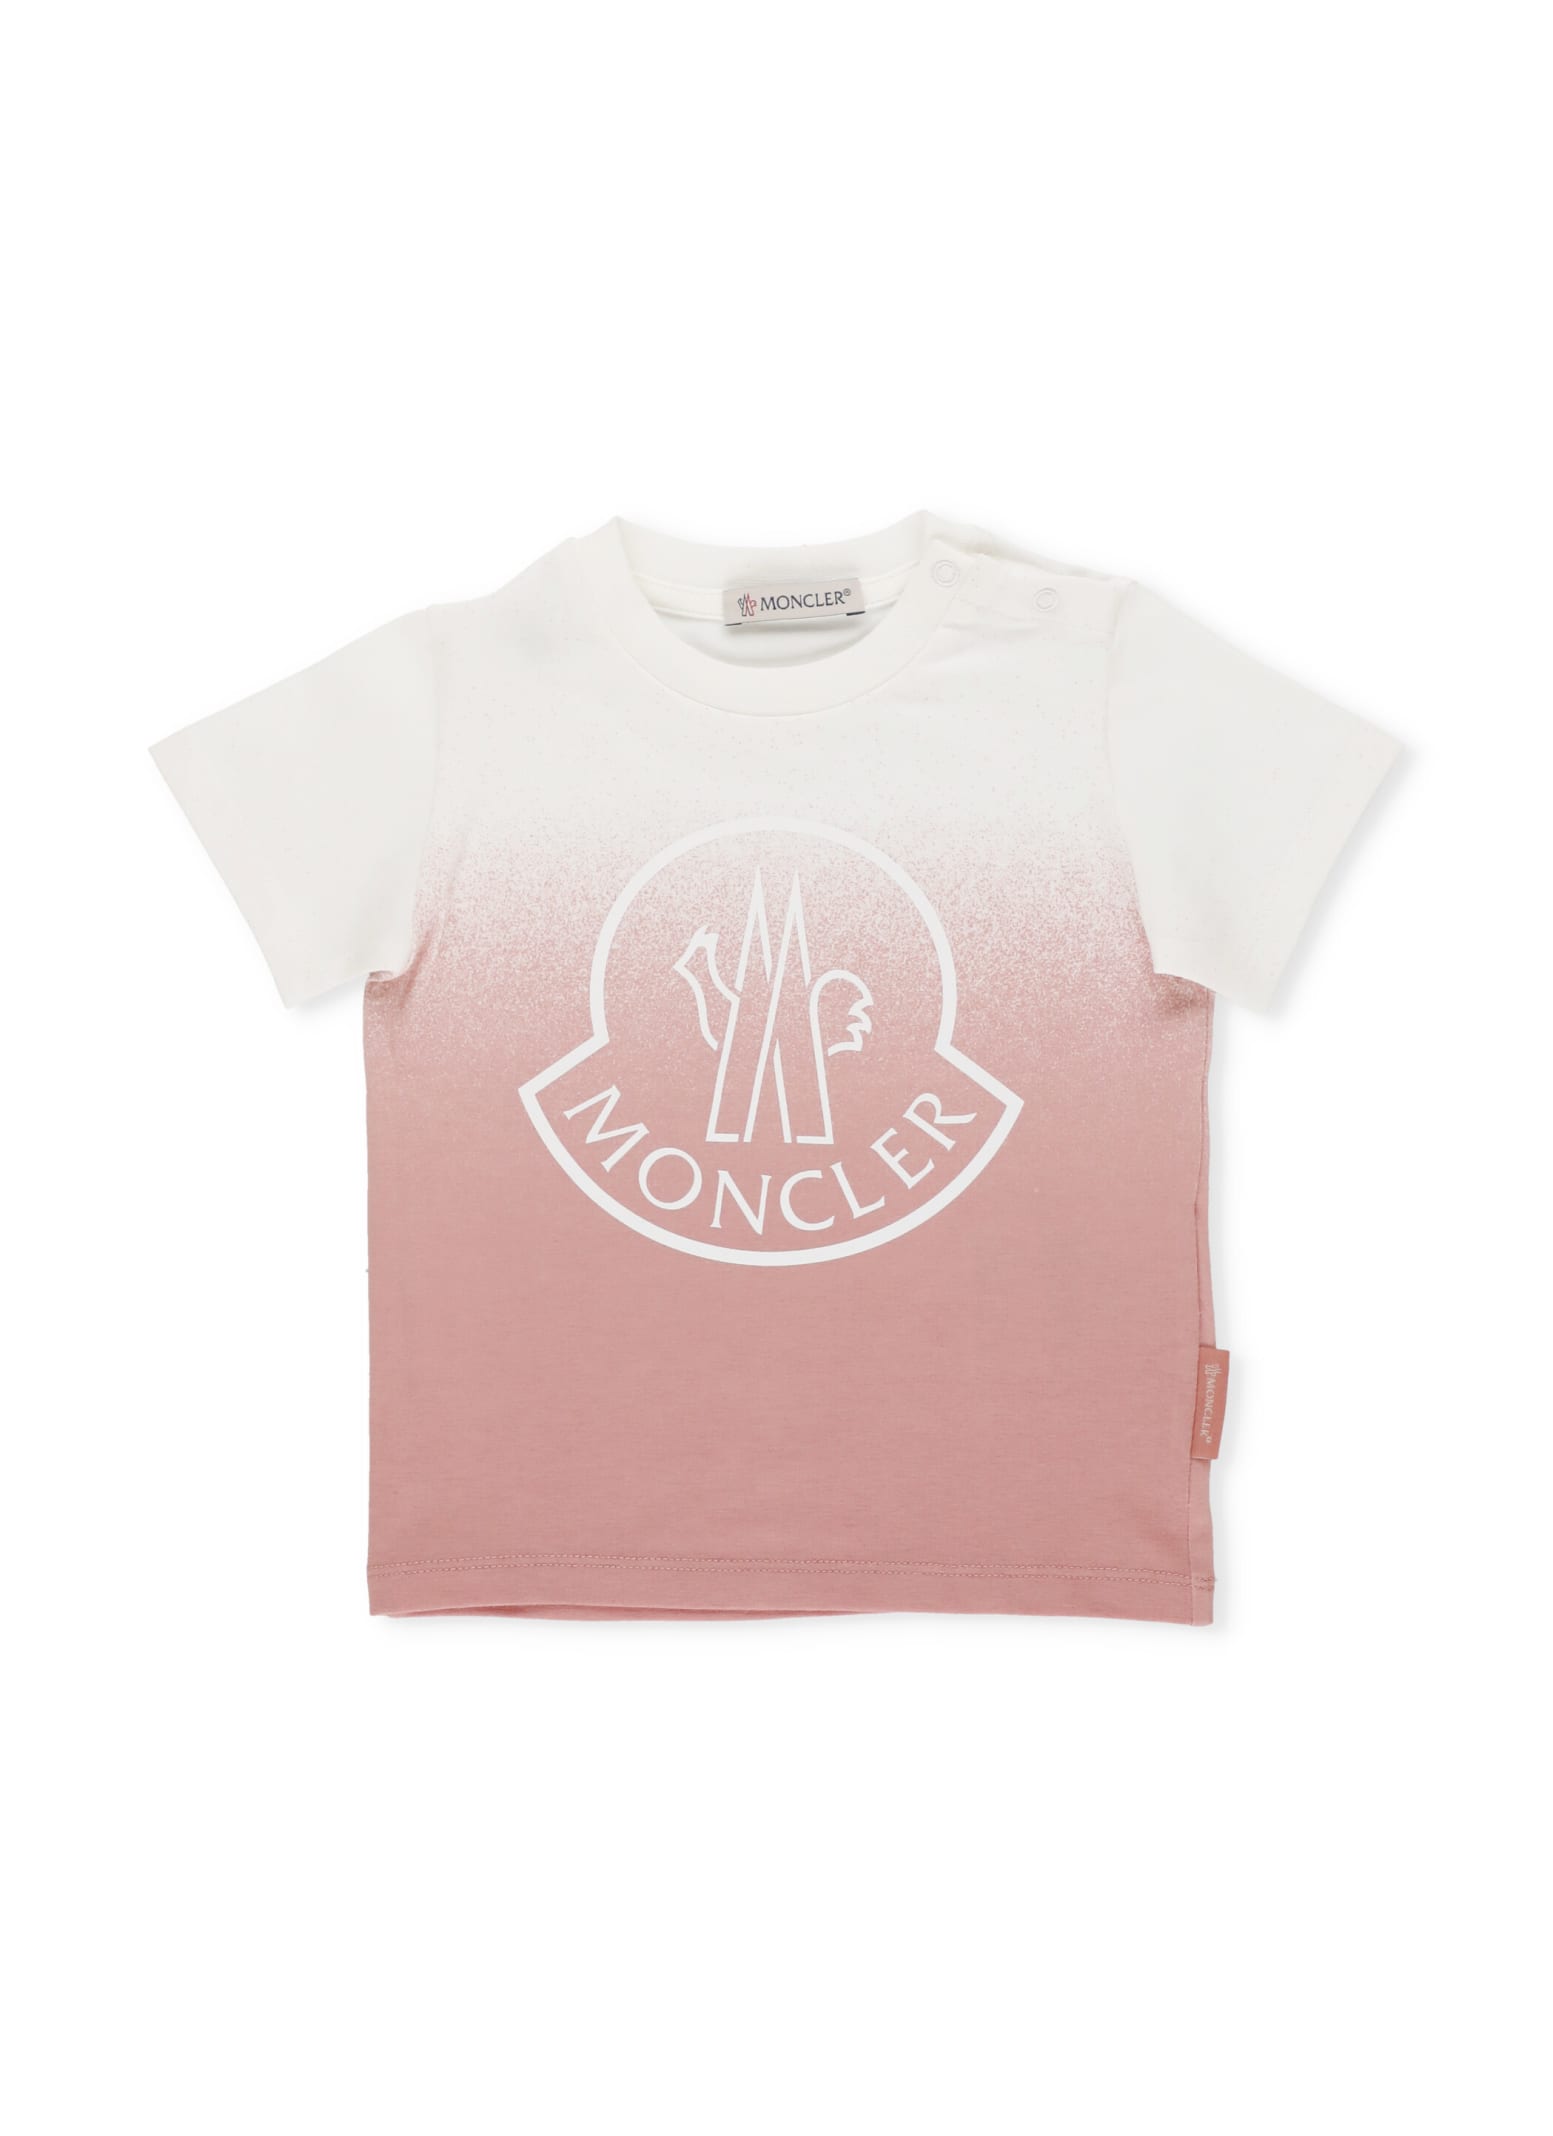 Moncler Babies' Girls Pink & White T-shirt